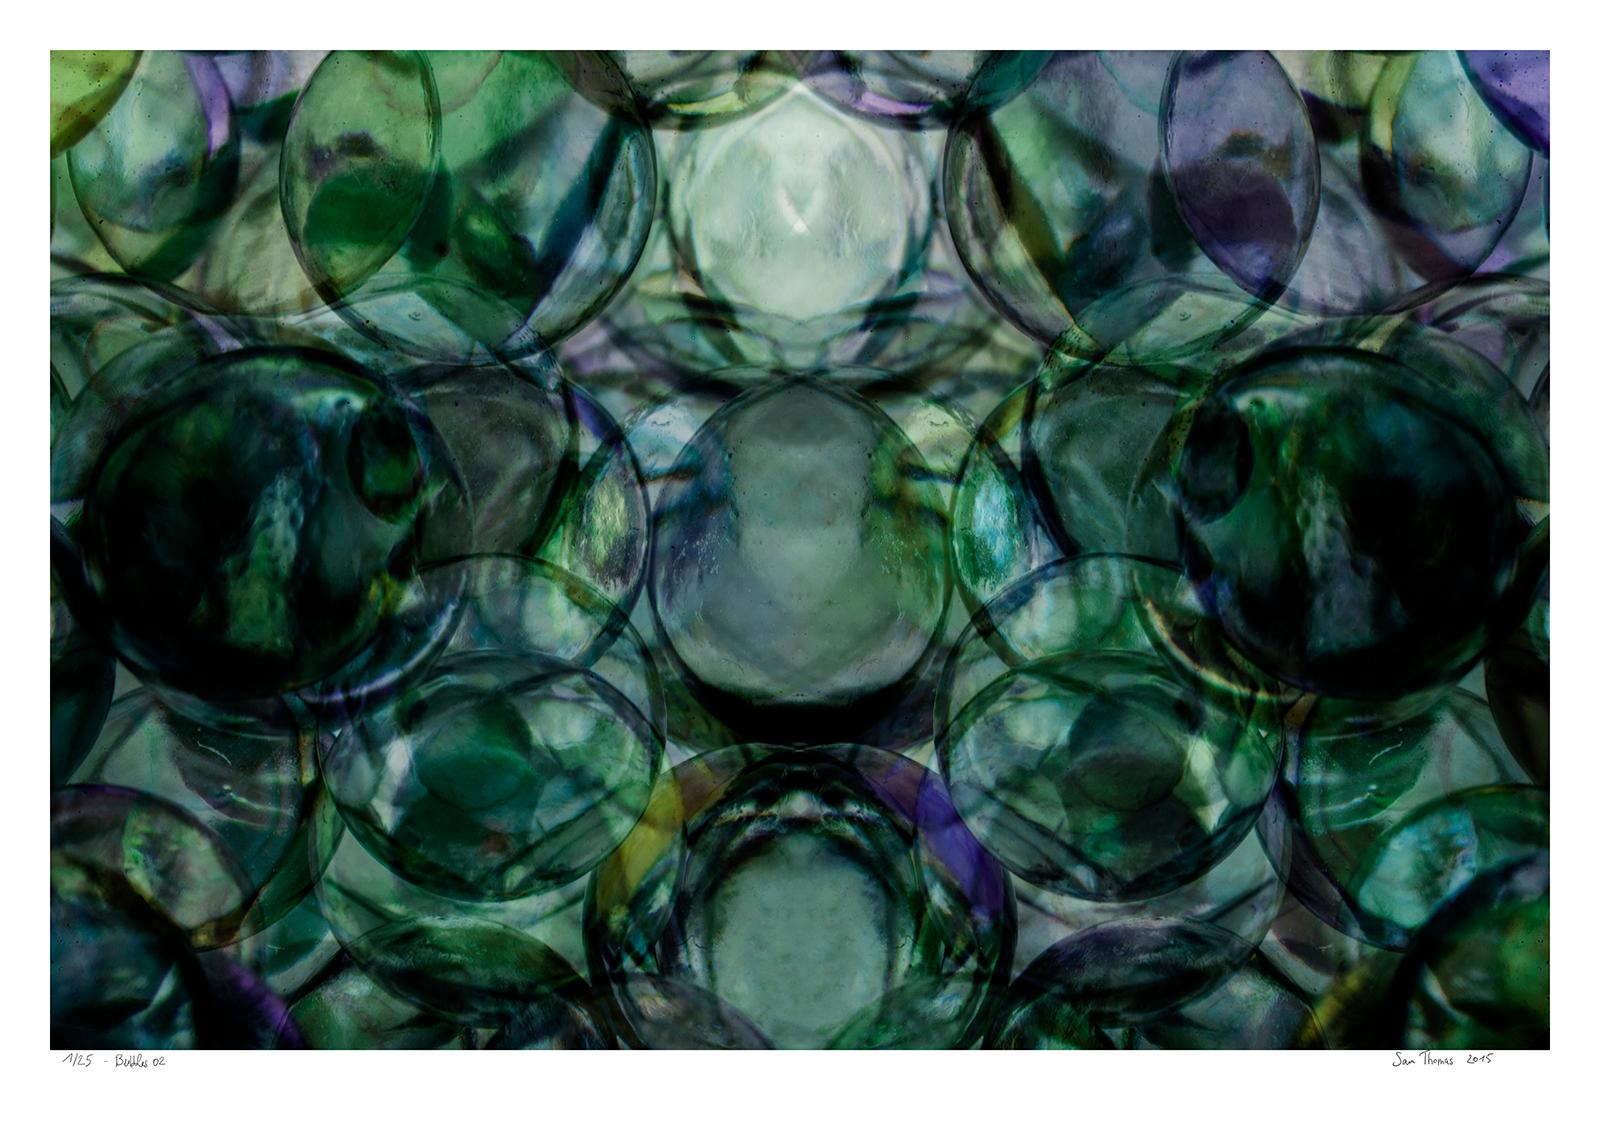 Bubbles 02 - Photographie couleur abstraite, tirage limité